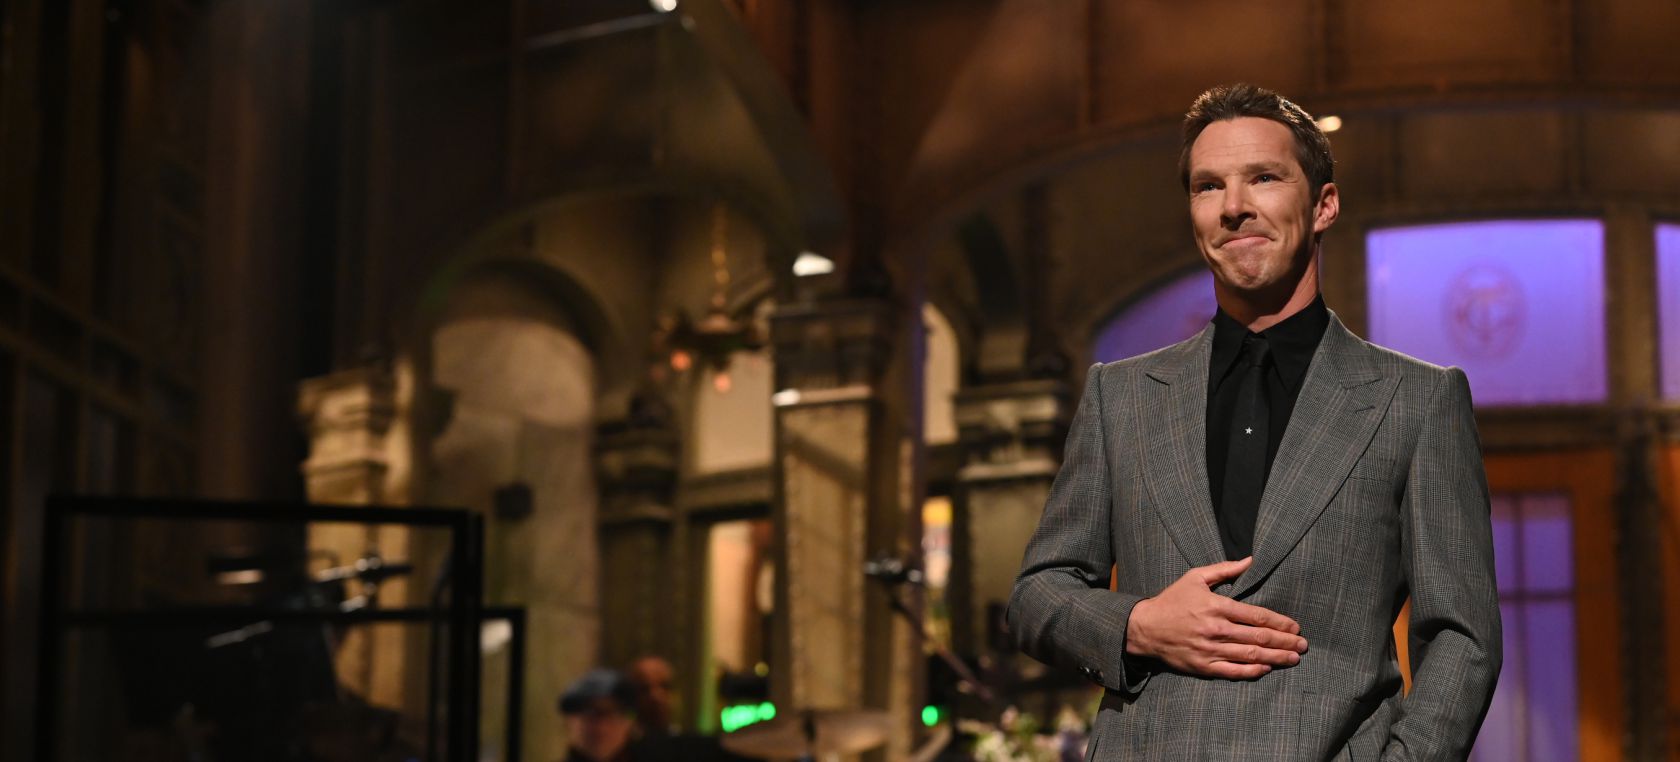 Benedict Cumberbatch habla de lo que hizo Will Smith en los Oscar: “Me pegó una paliza... No físicamente”